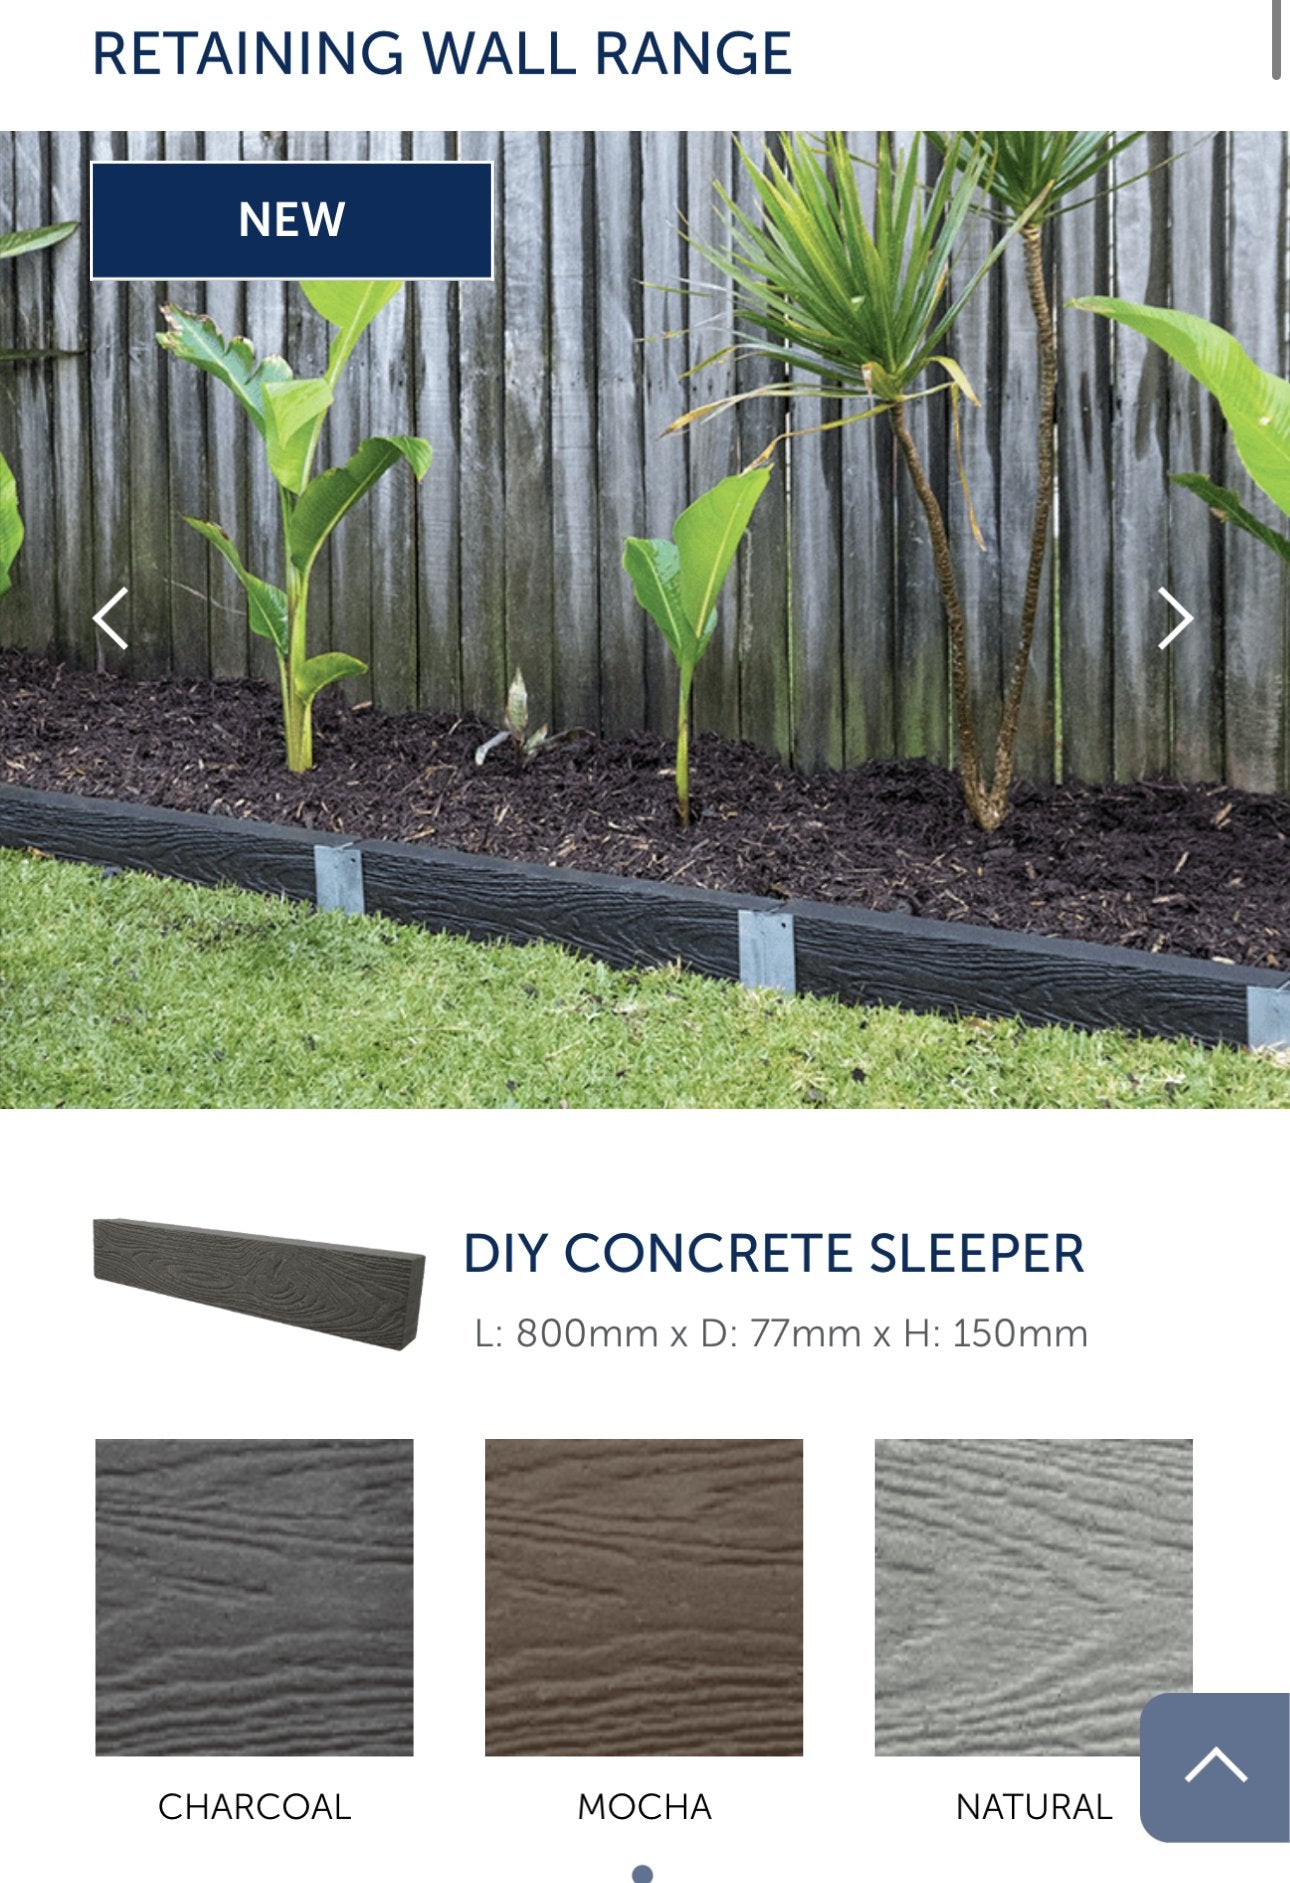 DIY Concrete Sleepers - Surplus Traders Australia Buy DIY Concrete Sleepers for only A$14.00 at Surplus Traders Australia!